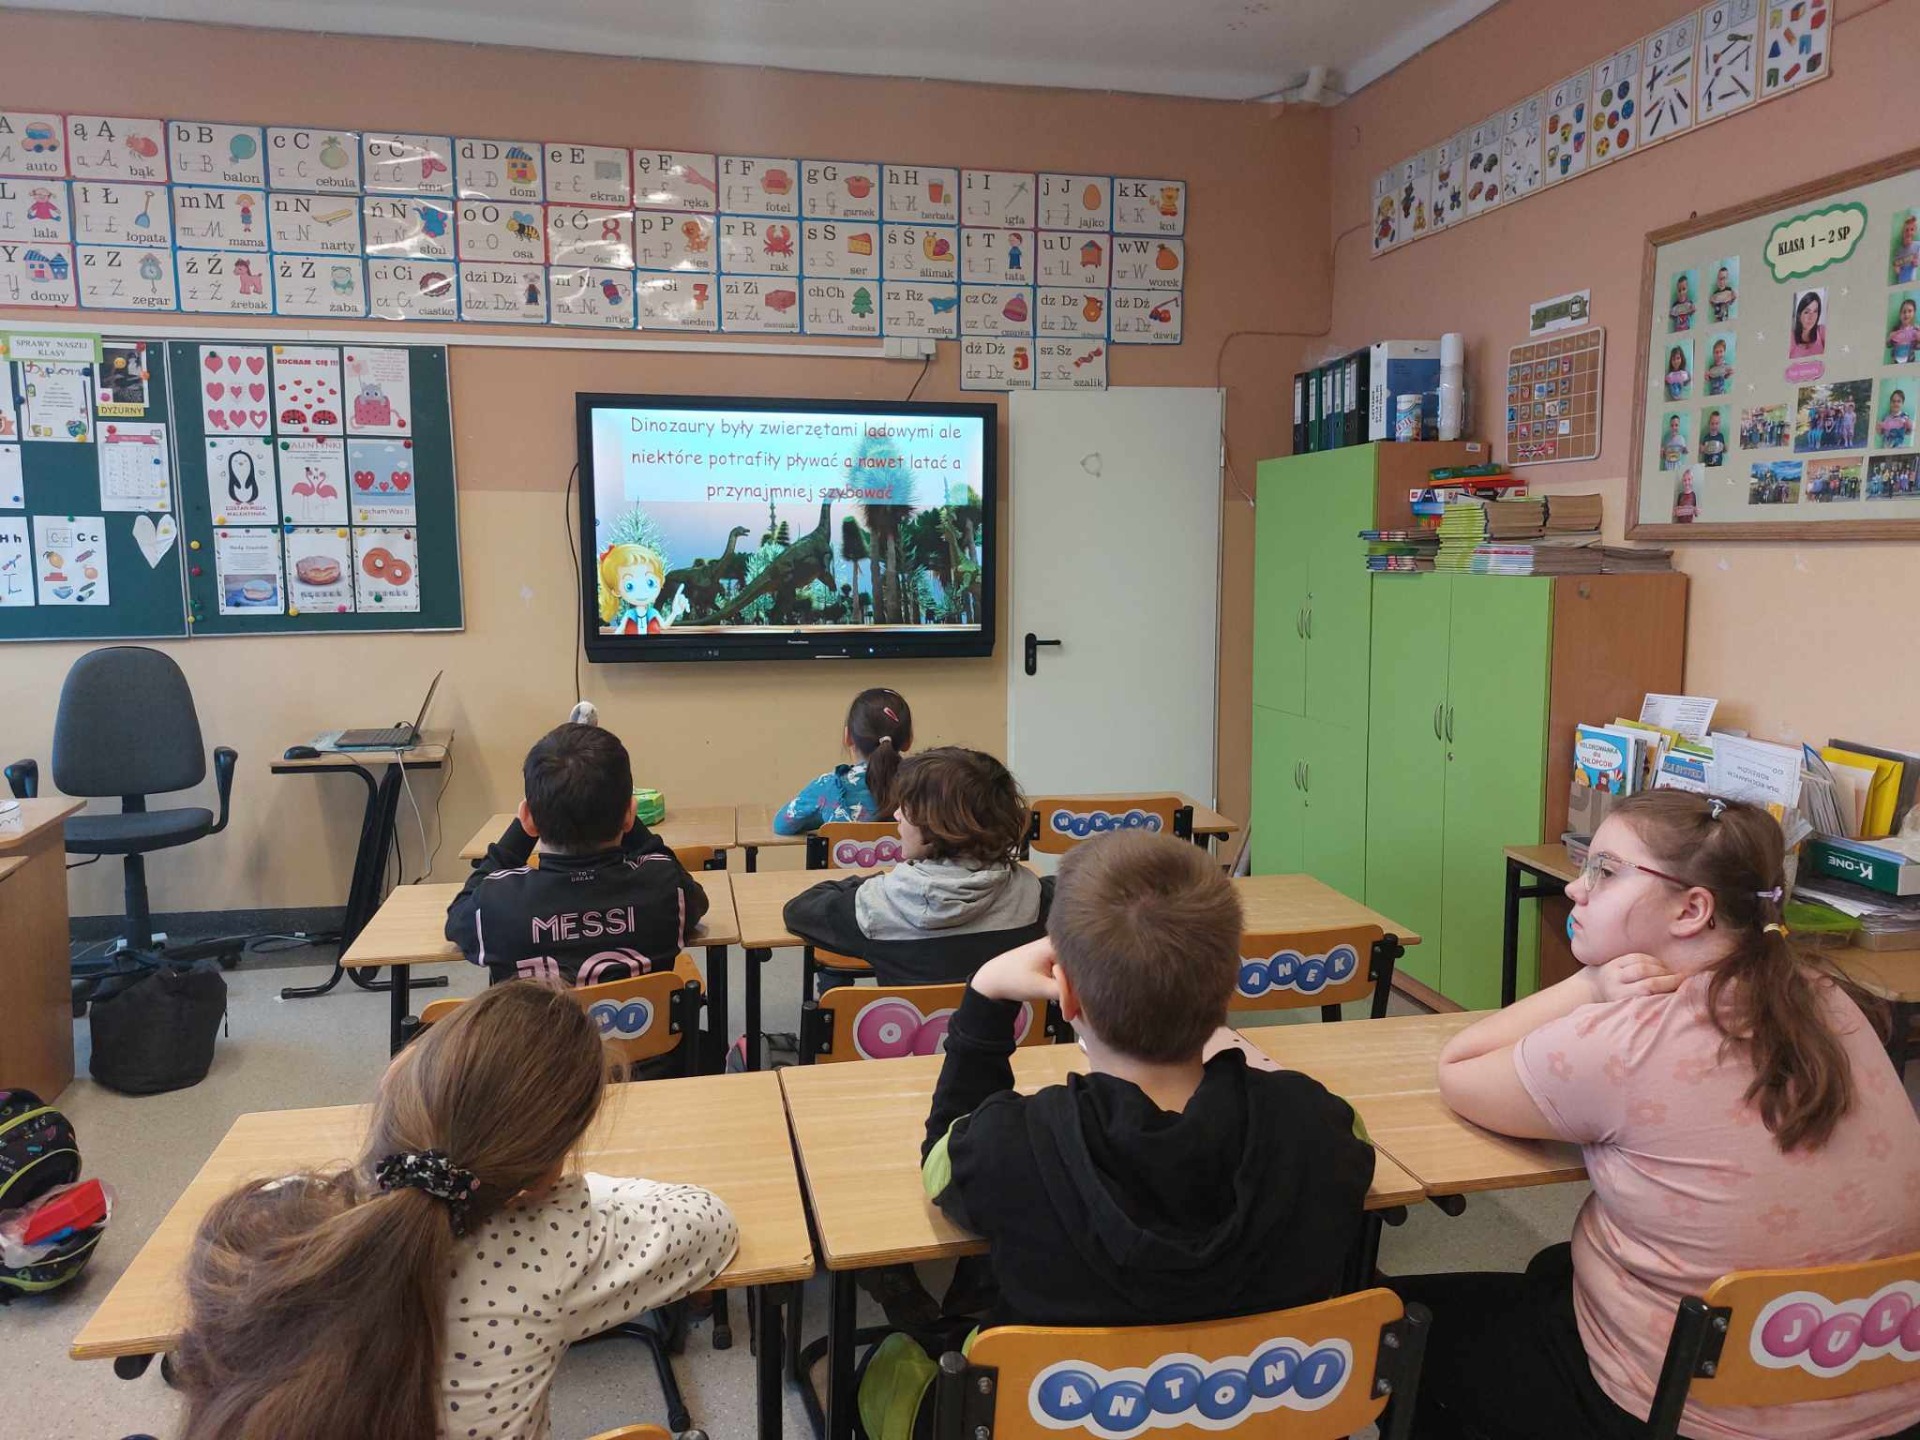 Uczniowie oglądają film o dinozaurach na tablicy interaktywnej